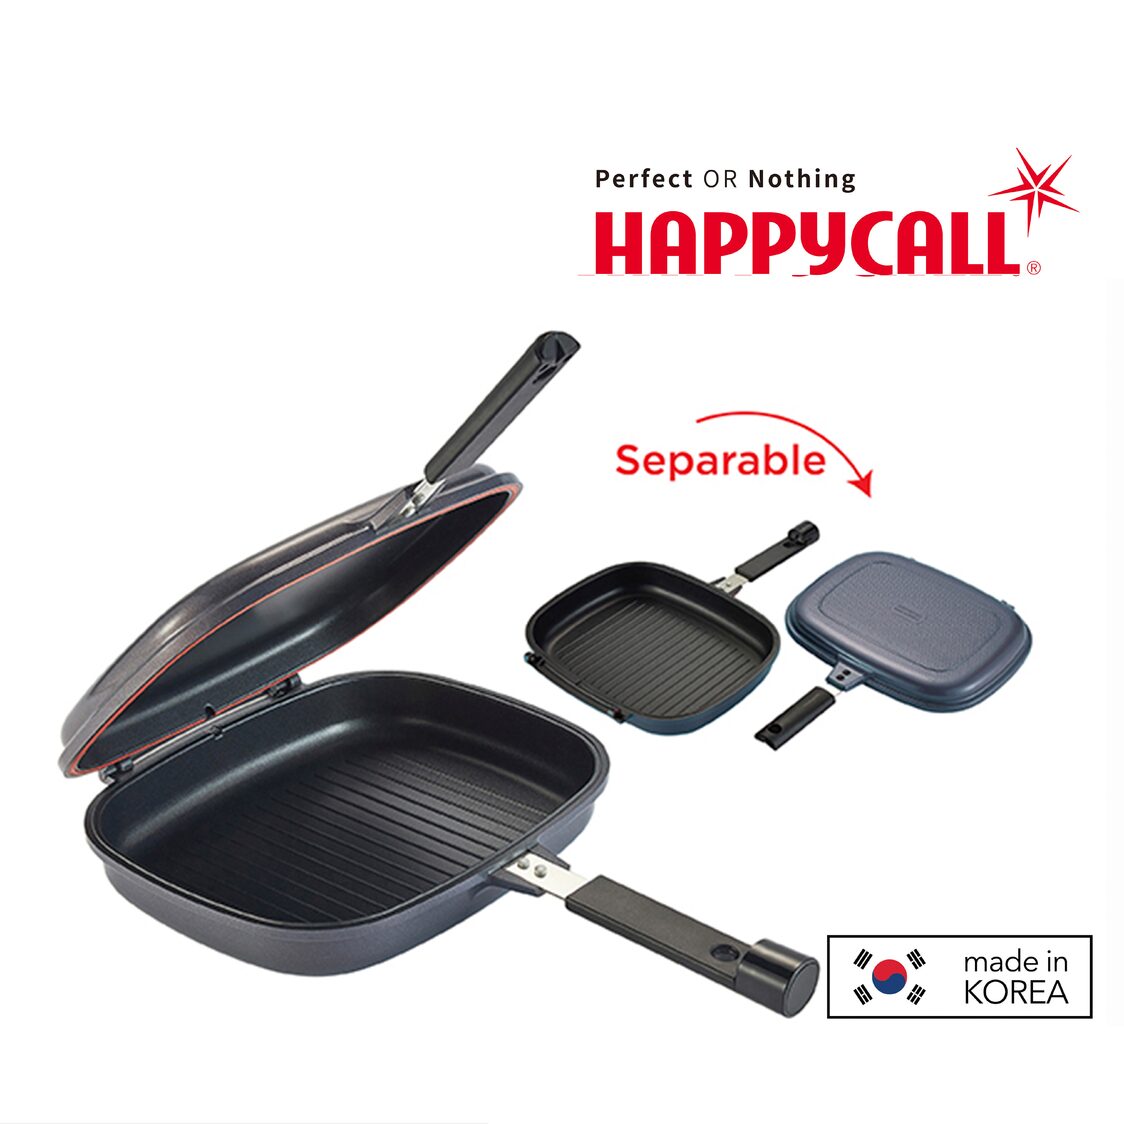 Happycall Double Pan Jumbo Grill - Happycall USA